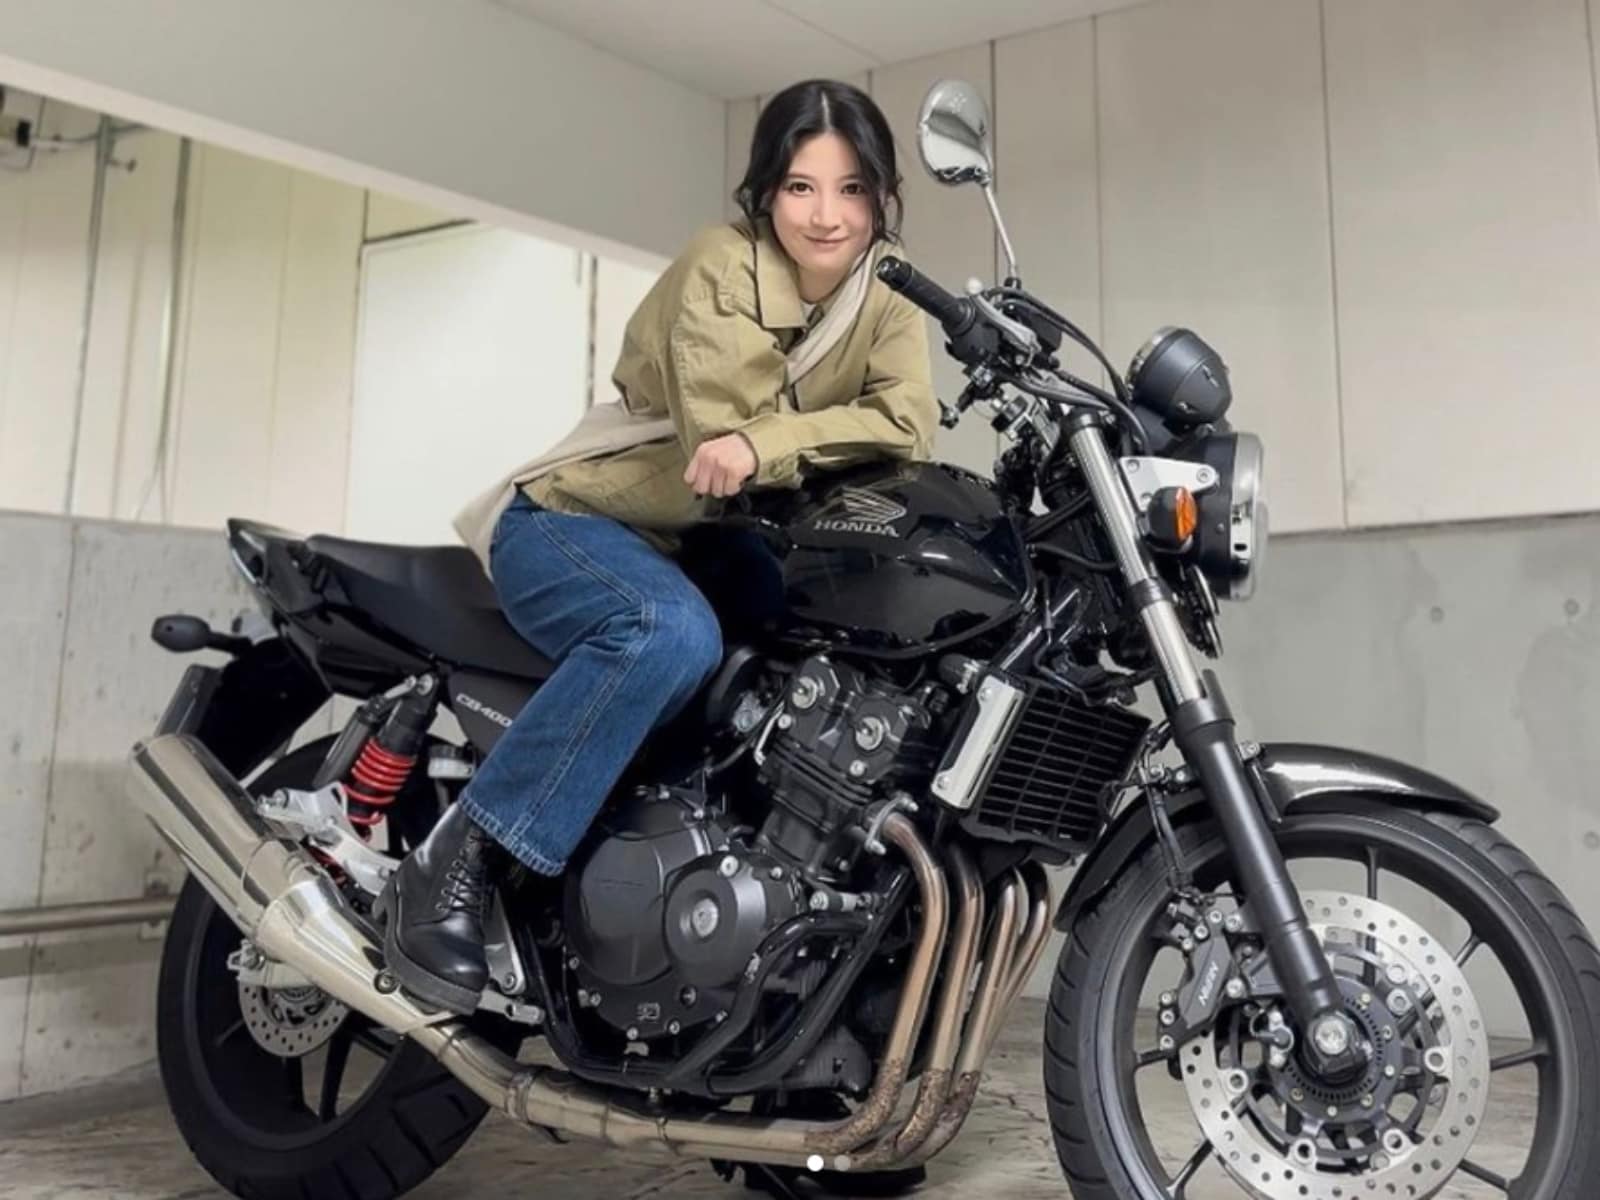 「今田美桜に似てる」50万人超の美人YouTuber、バイクショット公開に「めちゃカッコイイ」と称賛の嵐